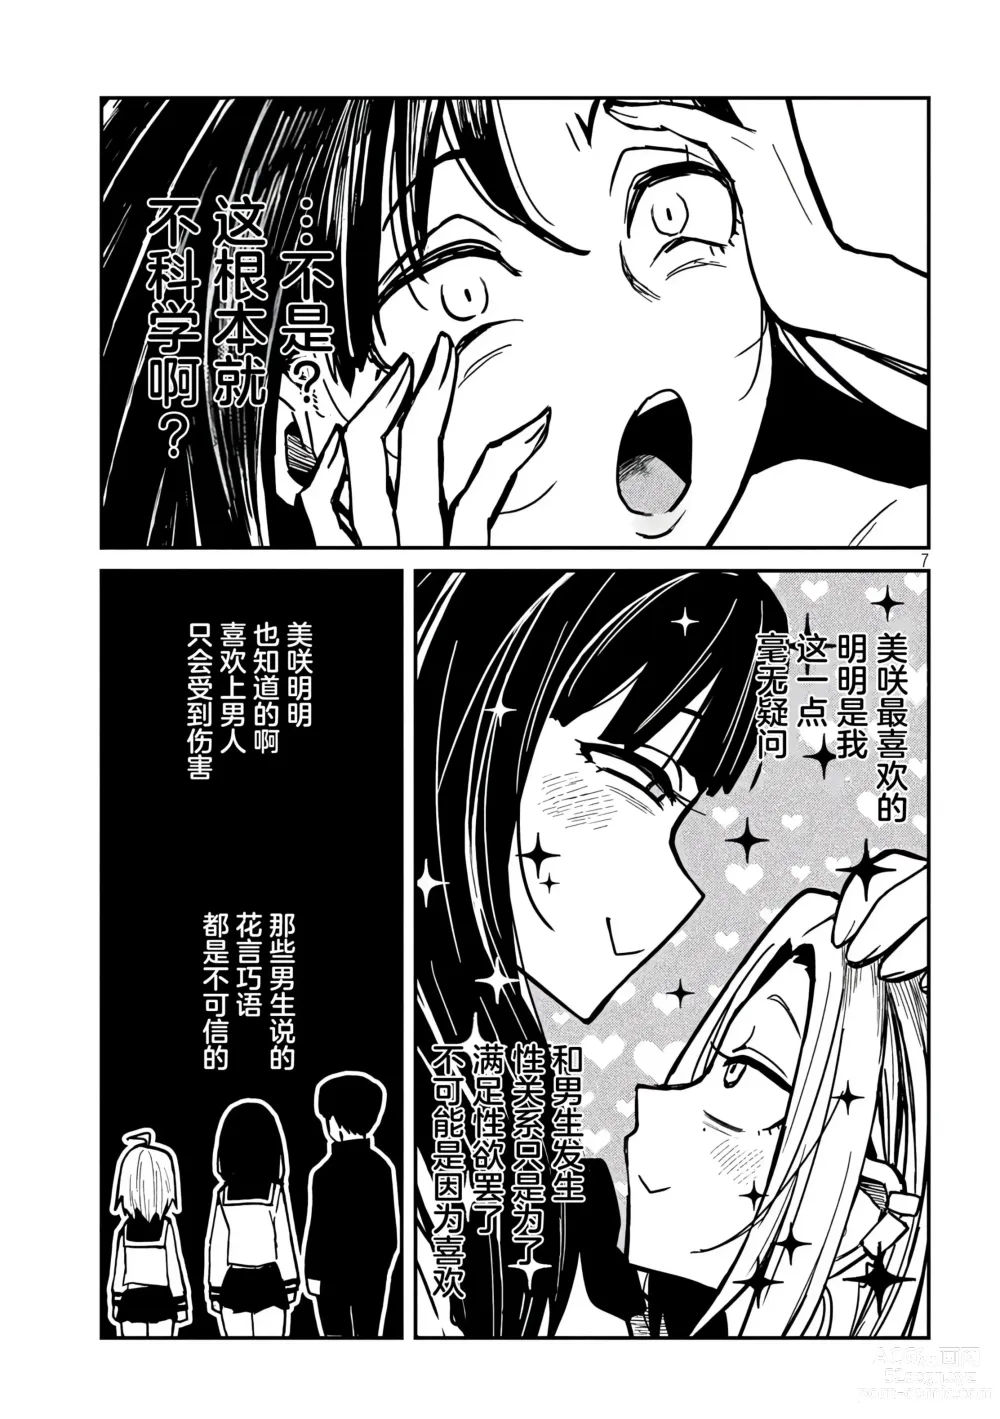 Page 527 of manga 喜欢来者不拒的你